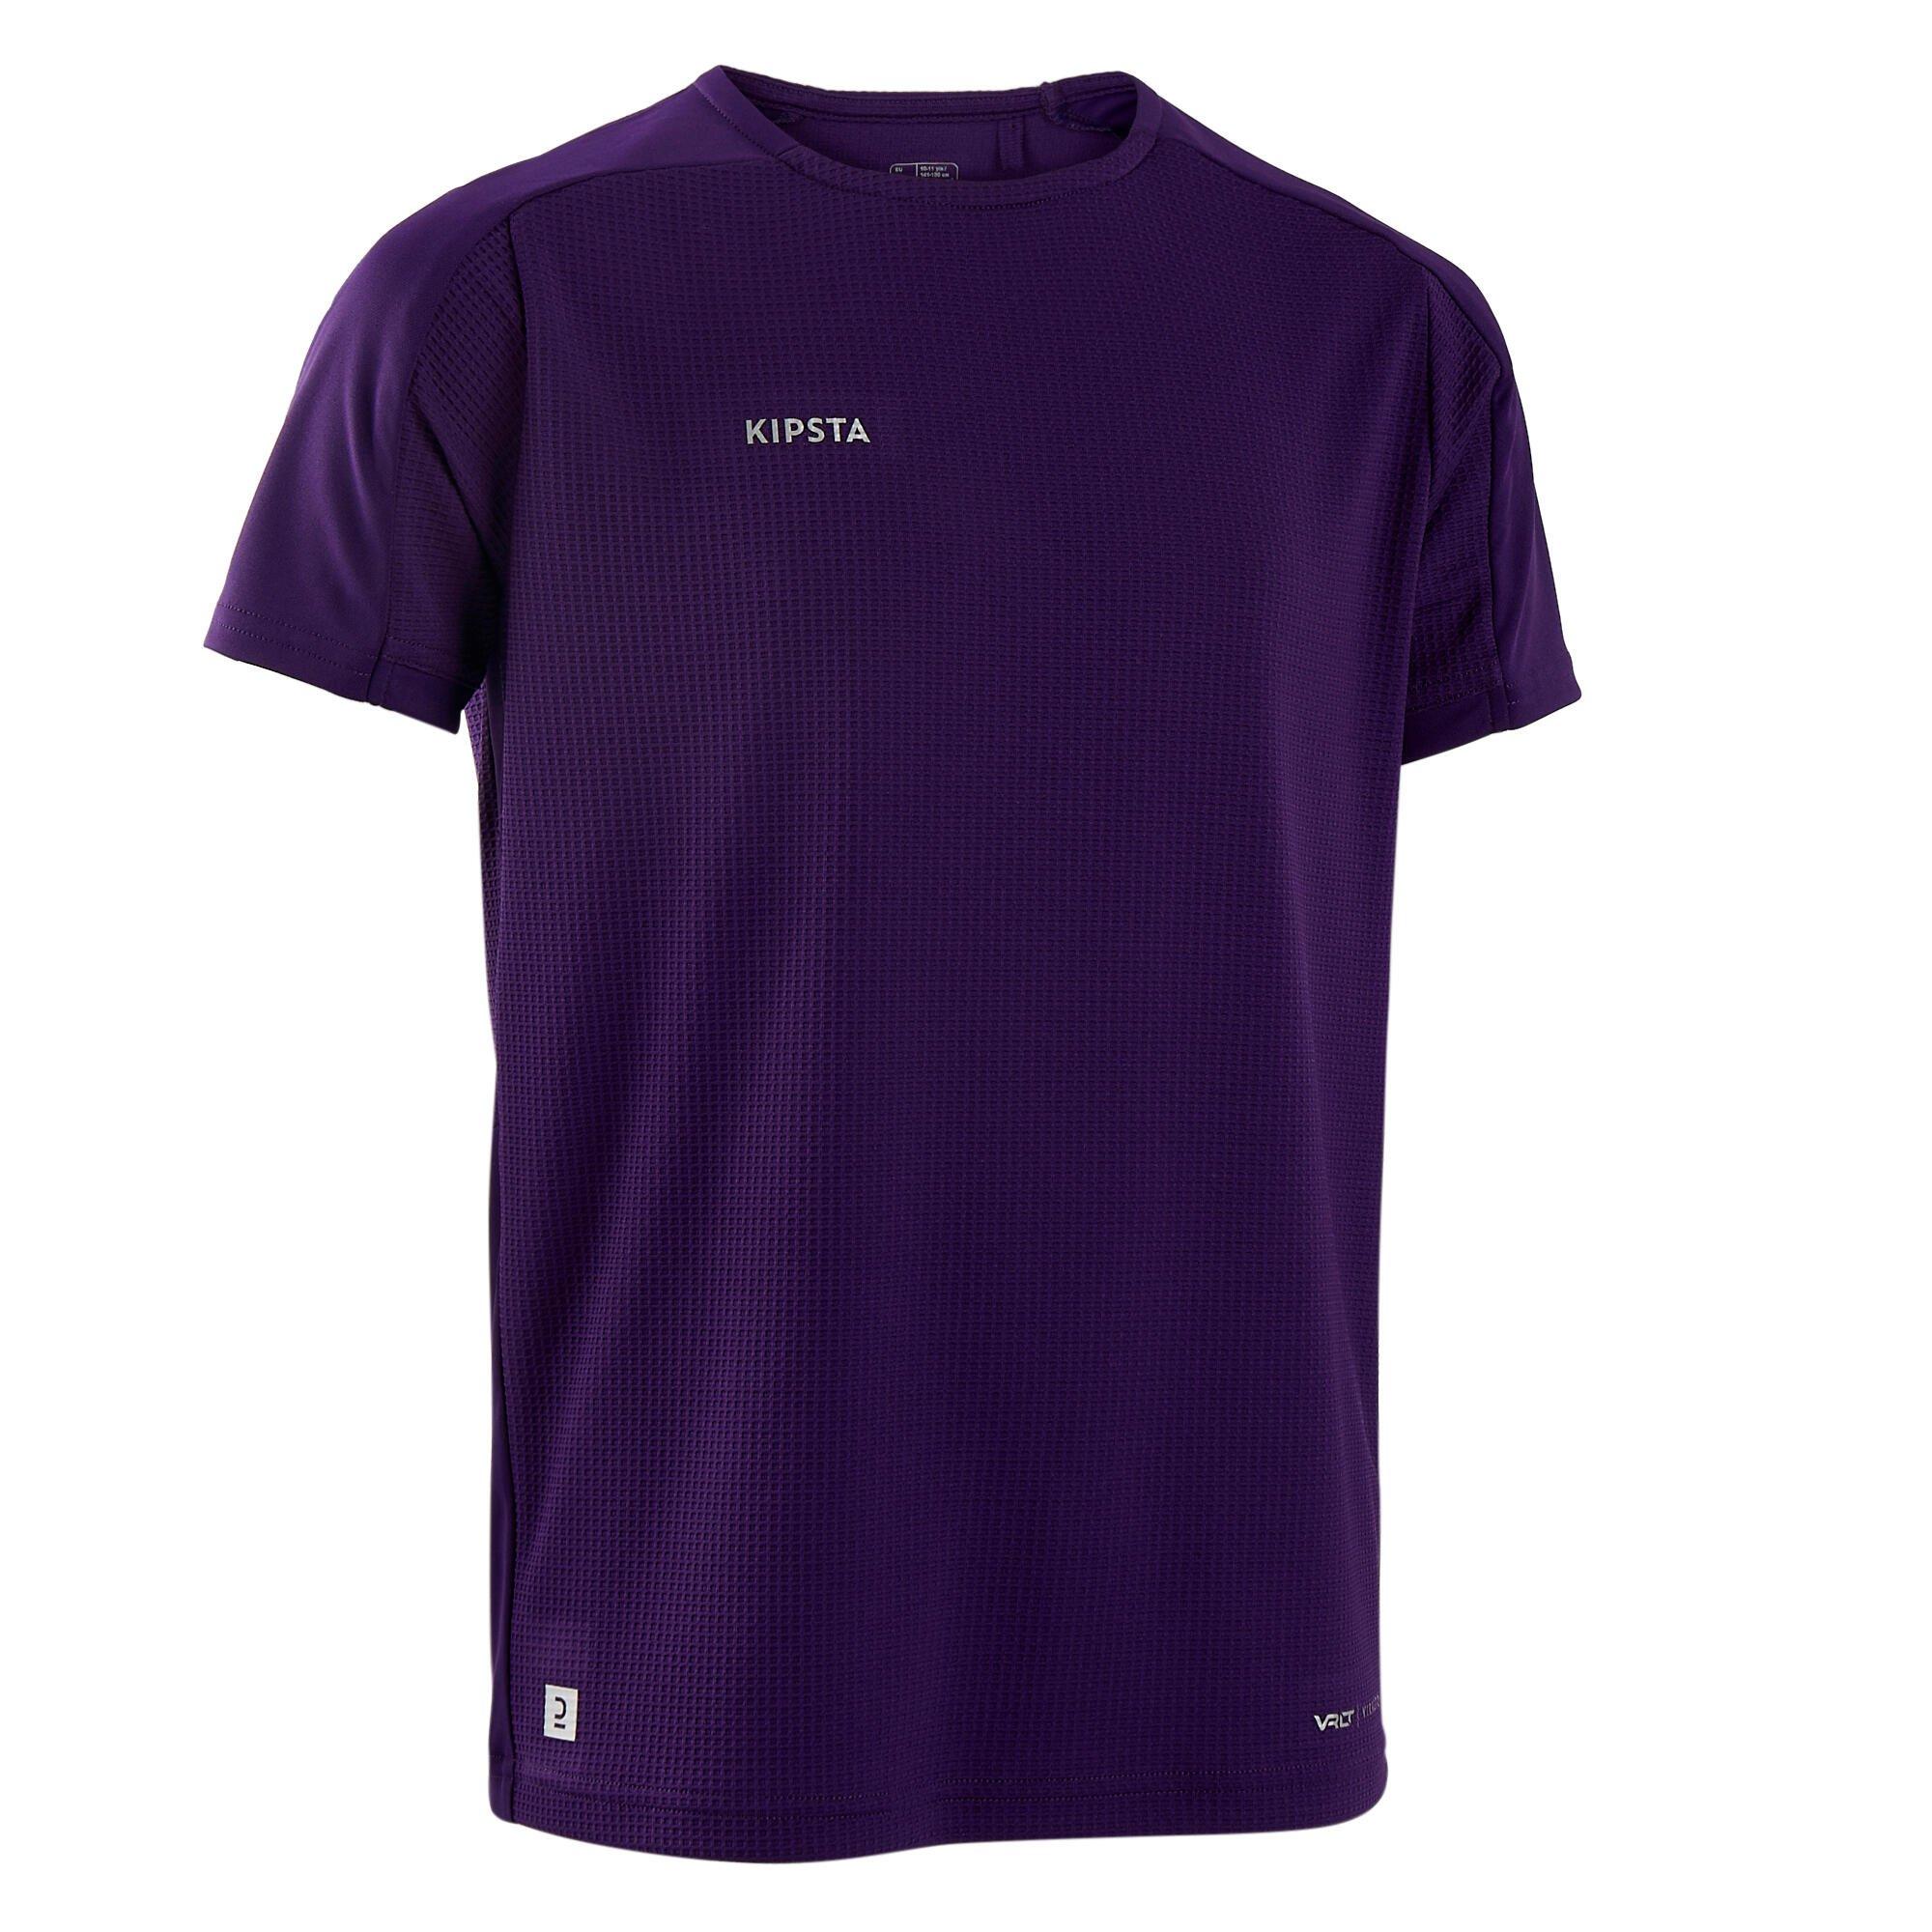 Decathlon Short-Sleeved Football Shirt Viralto Solo